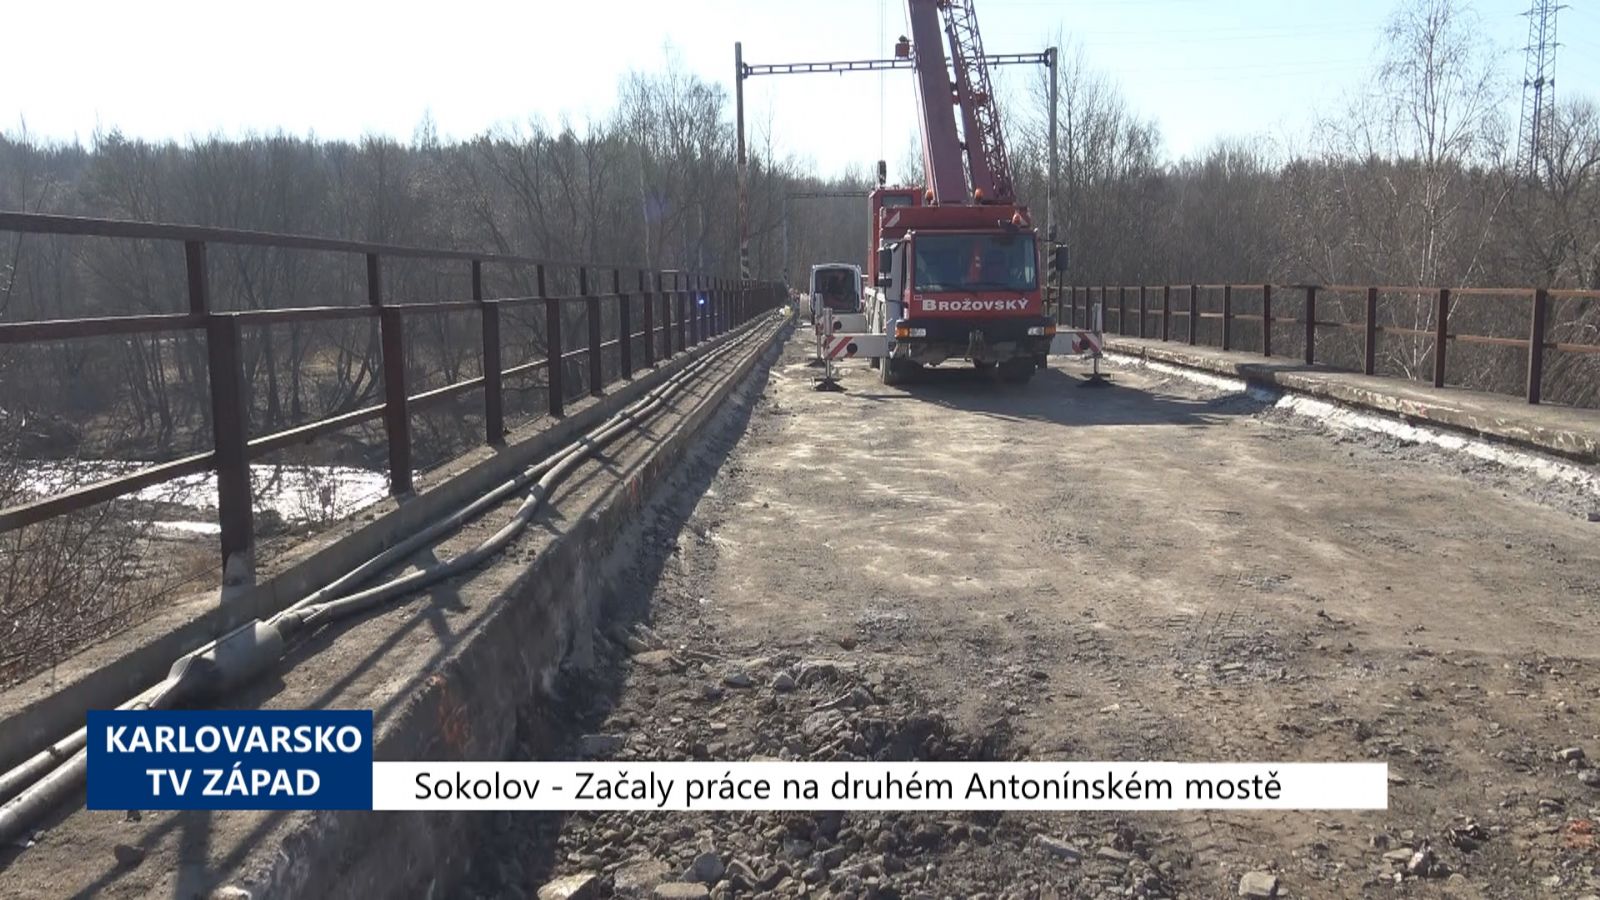 Sokolov: Začaly práce na druhém Antonínském mostě (TV Západ)